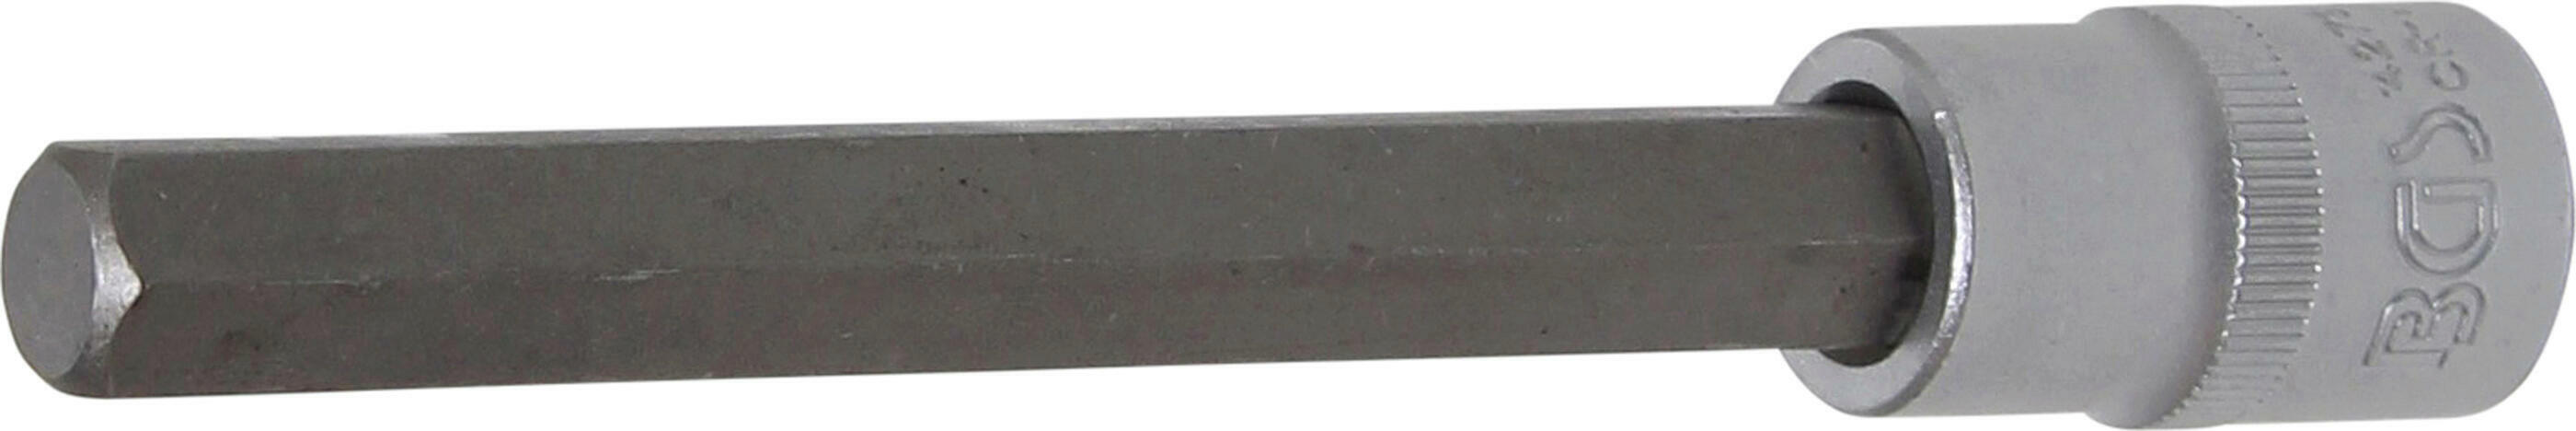 Bit-Einsatz | Länge 140 mm | Antrieb Innenvierkant 12,5 mm (1/2") | Innensechskant 12 mm